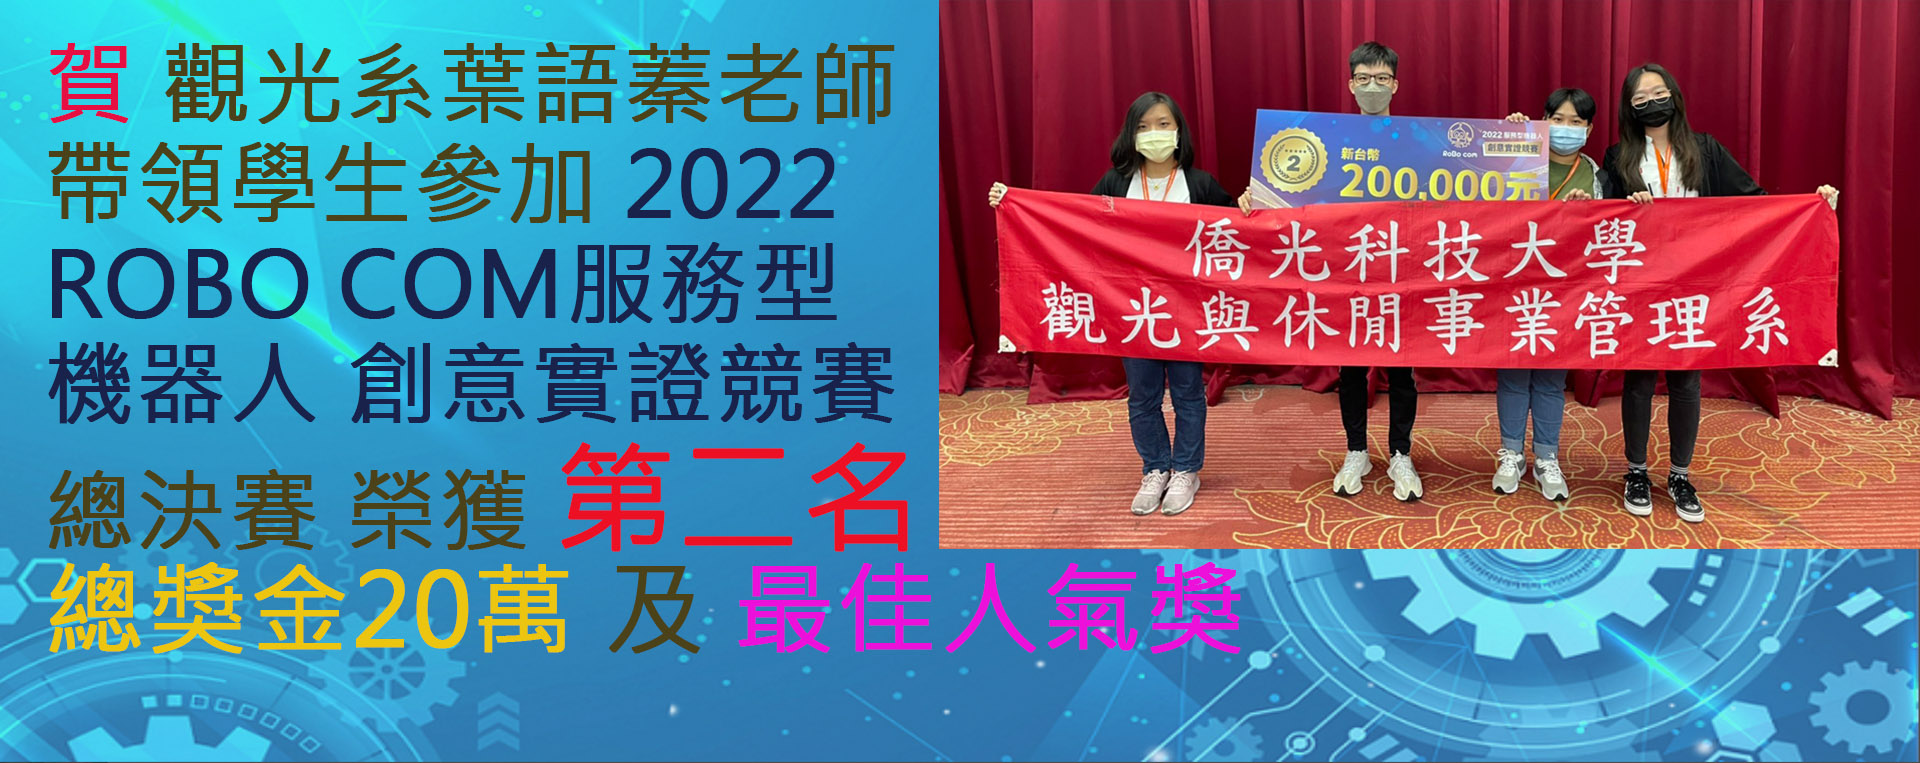 本系師生參加 2022 服務型機器人創新應用競賽 獲獎